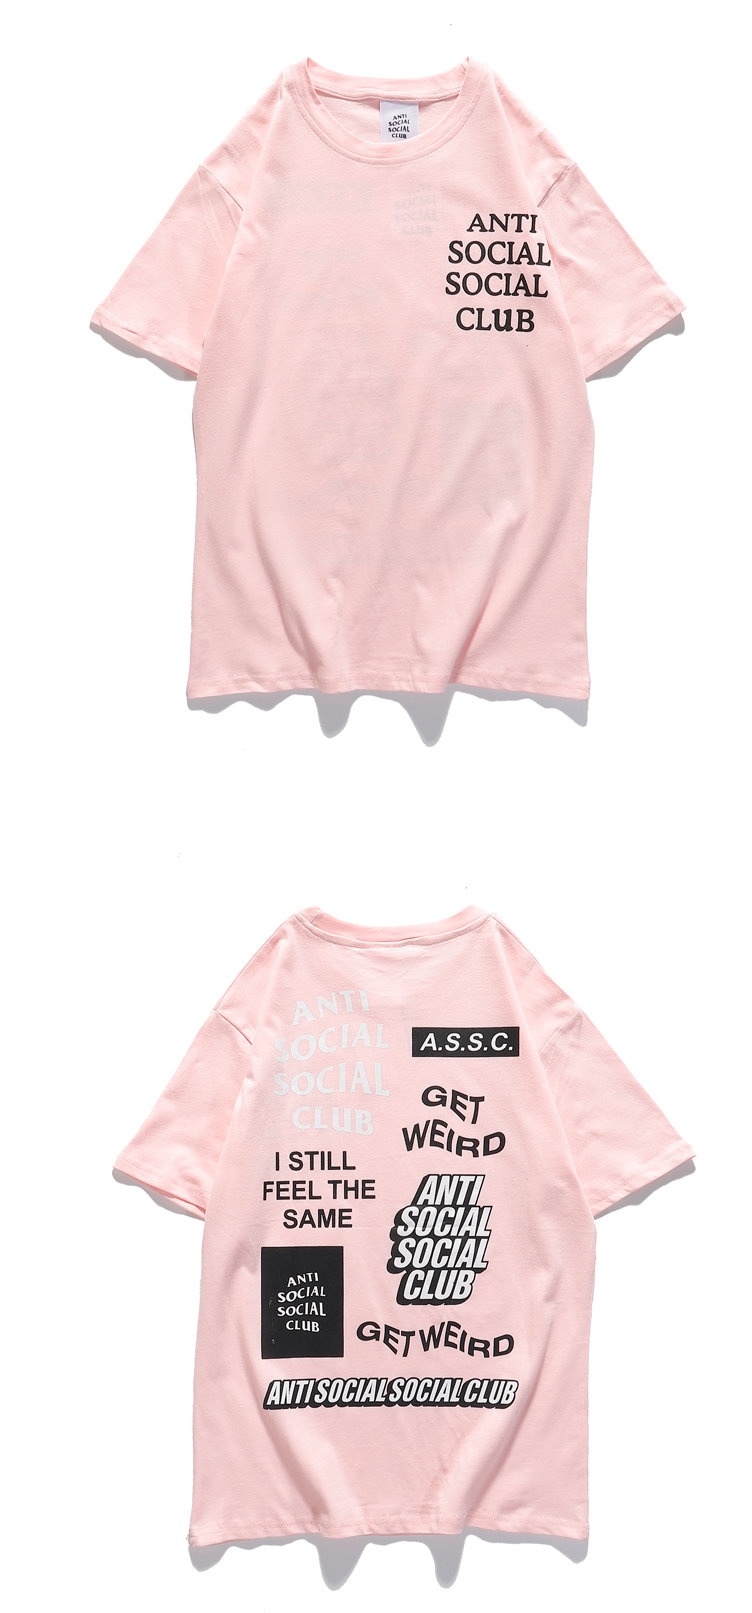 ASSC barrage short-sleeved T-shirt ユニセックス 男女兼用ASSCバラージプリント半袖Tシャツ